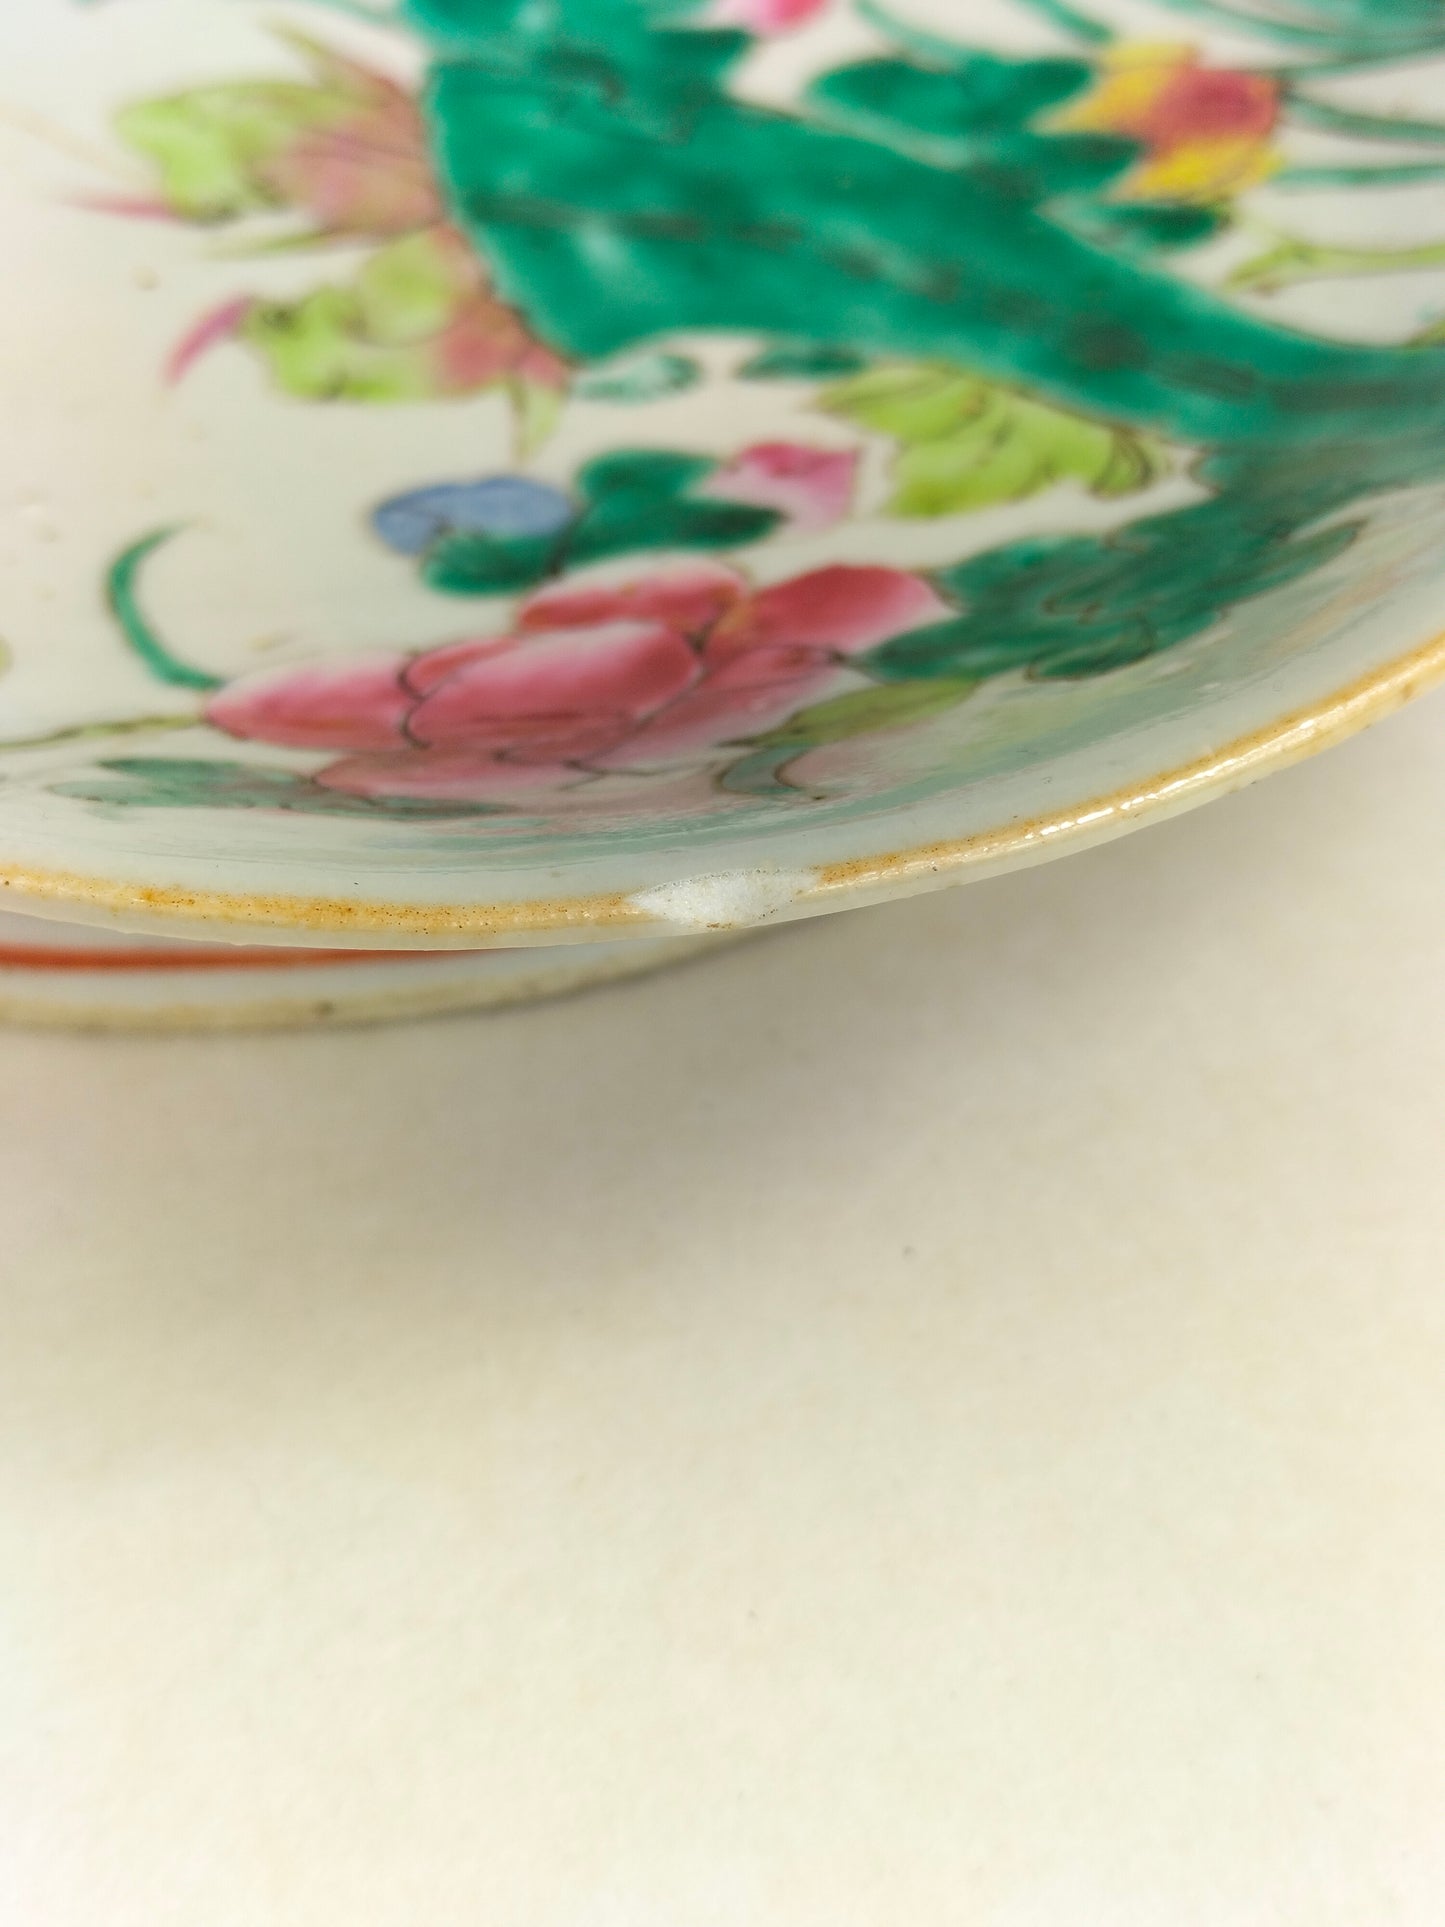 一套 2 件中国古董吊花粉彩盘，饰有花卉和公鸡 // 清朝 - 19 世纪